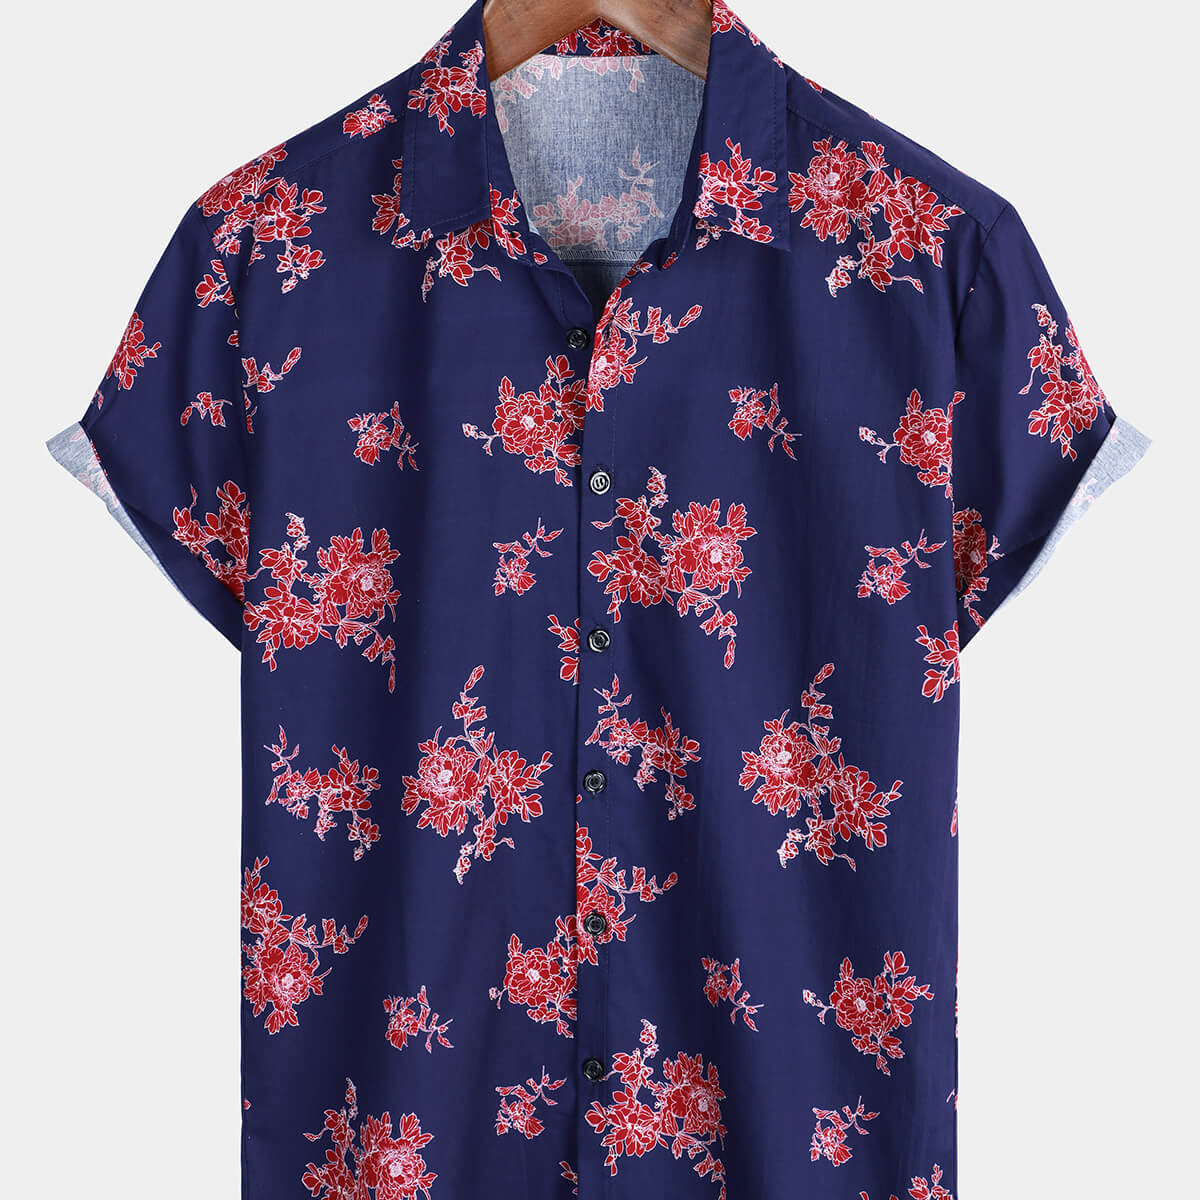 Men's Floral Hawaiian Flower Print Short Sleeve Shirt